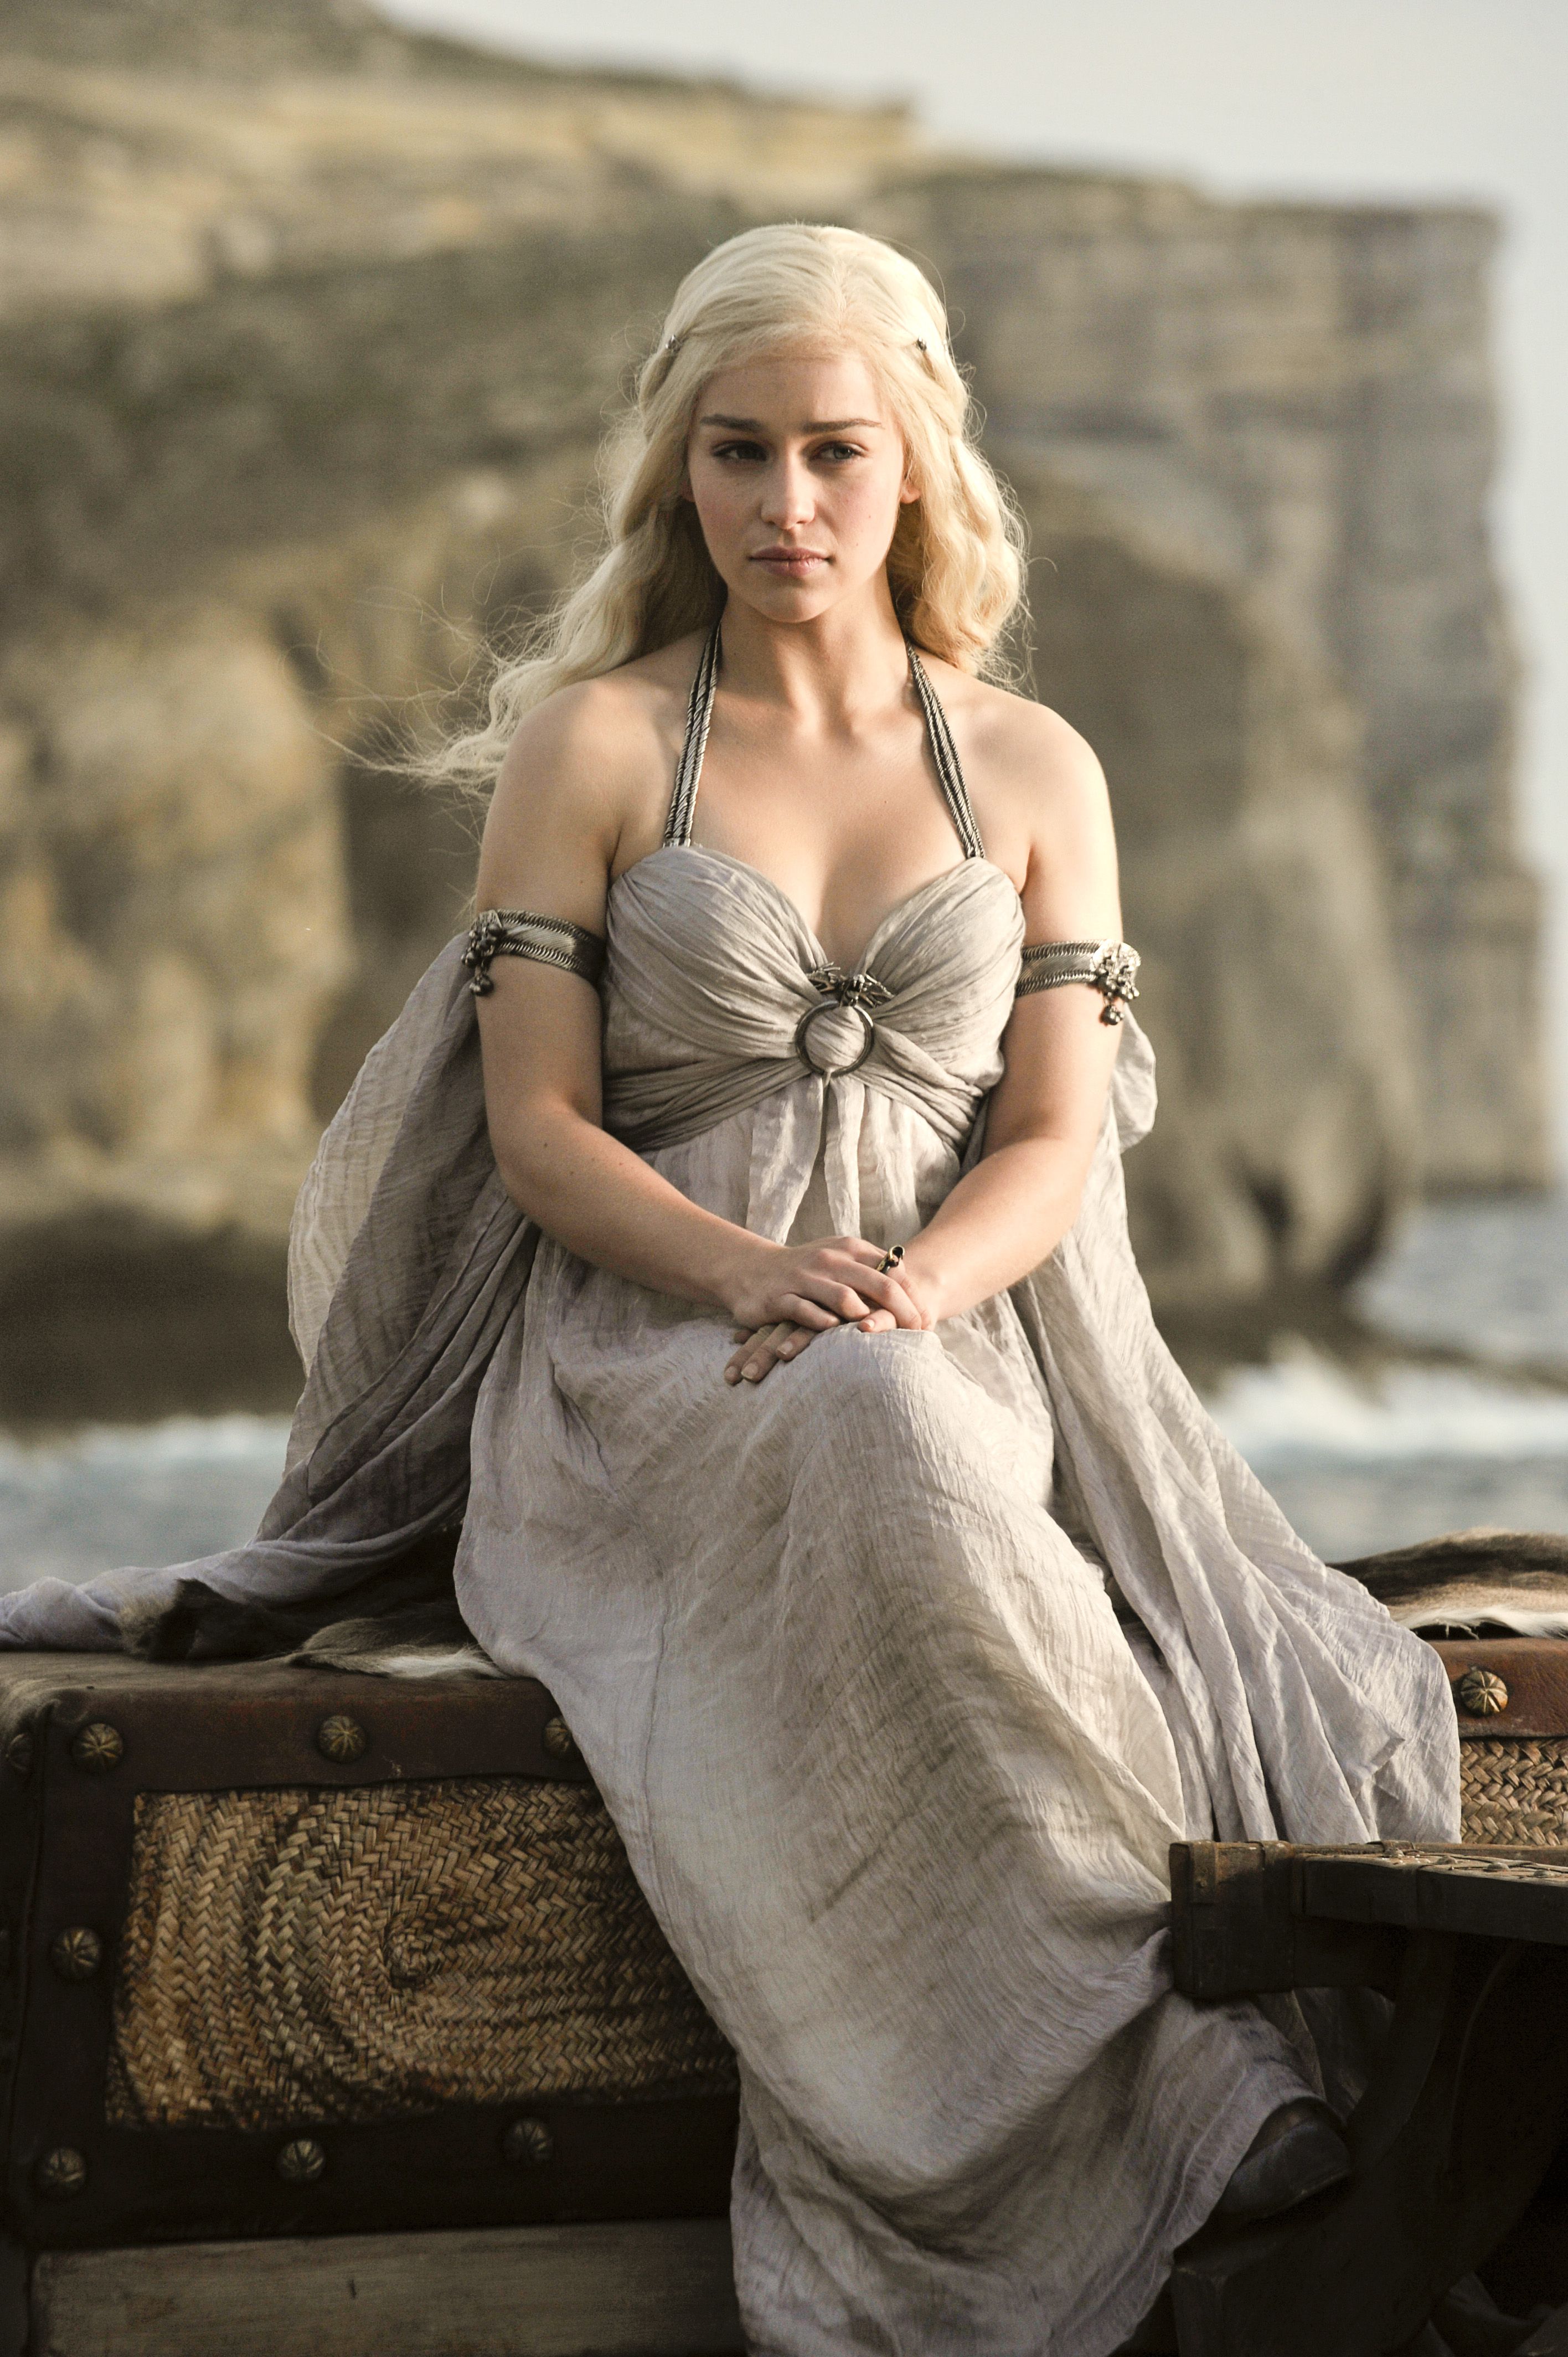 daenerys targaryen dress